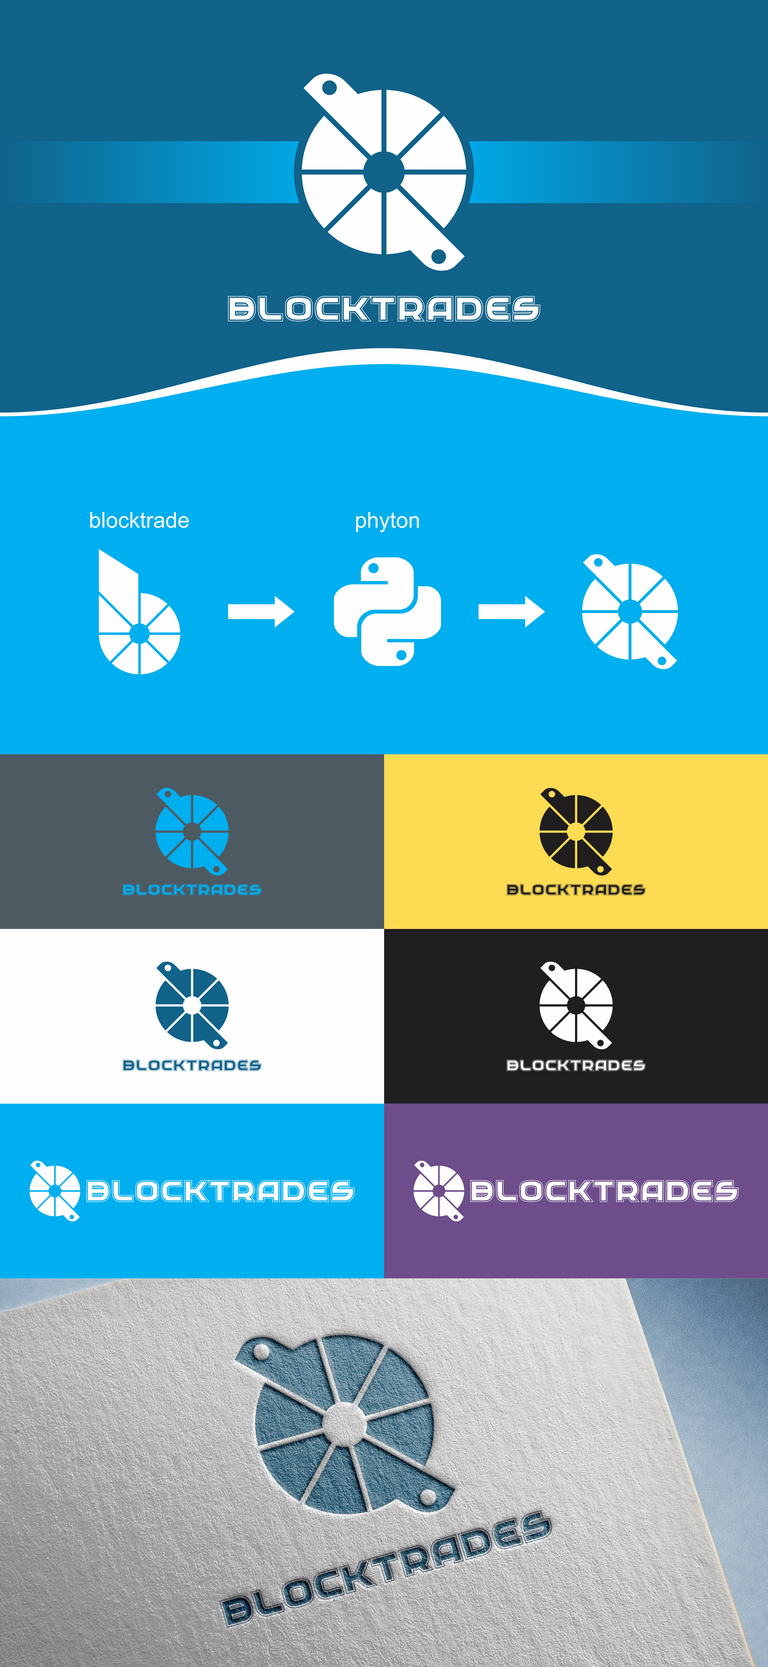 blocktrade presentations.png